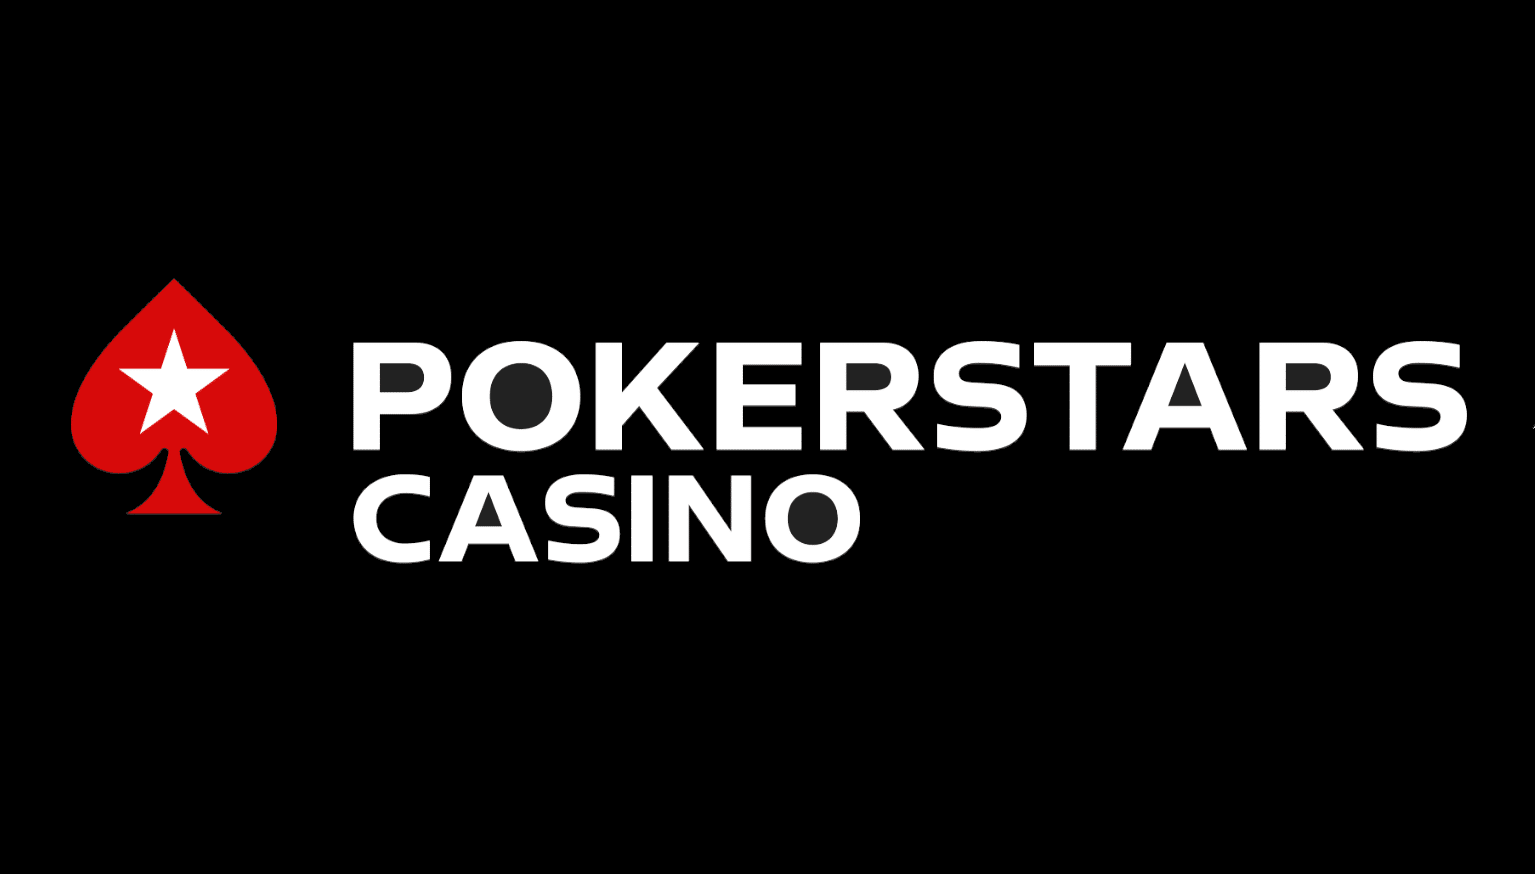 Pokerstars casino online